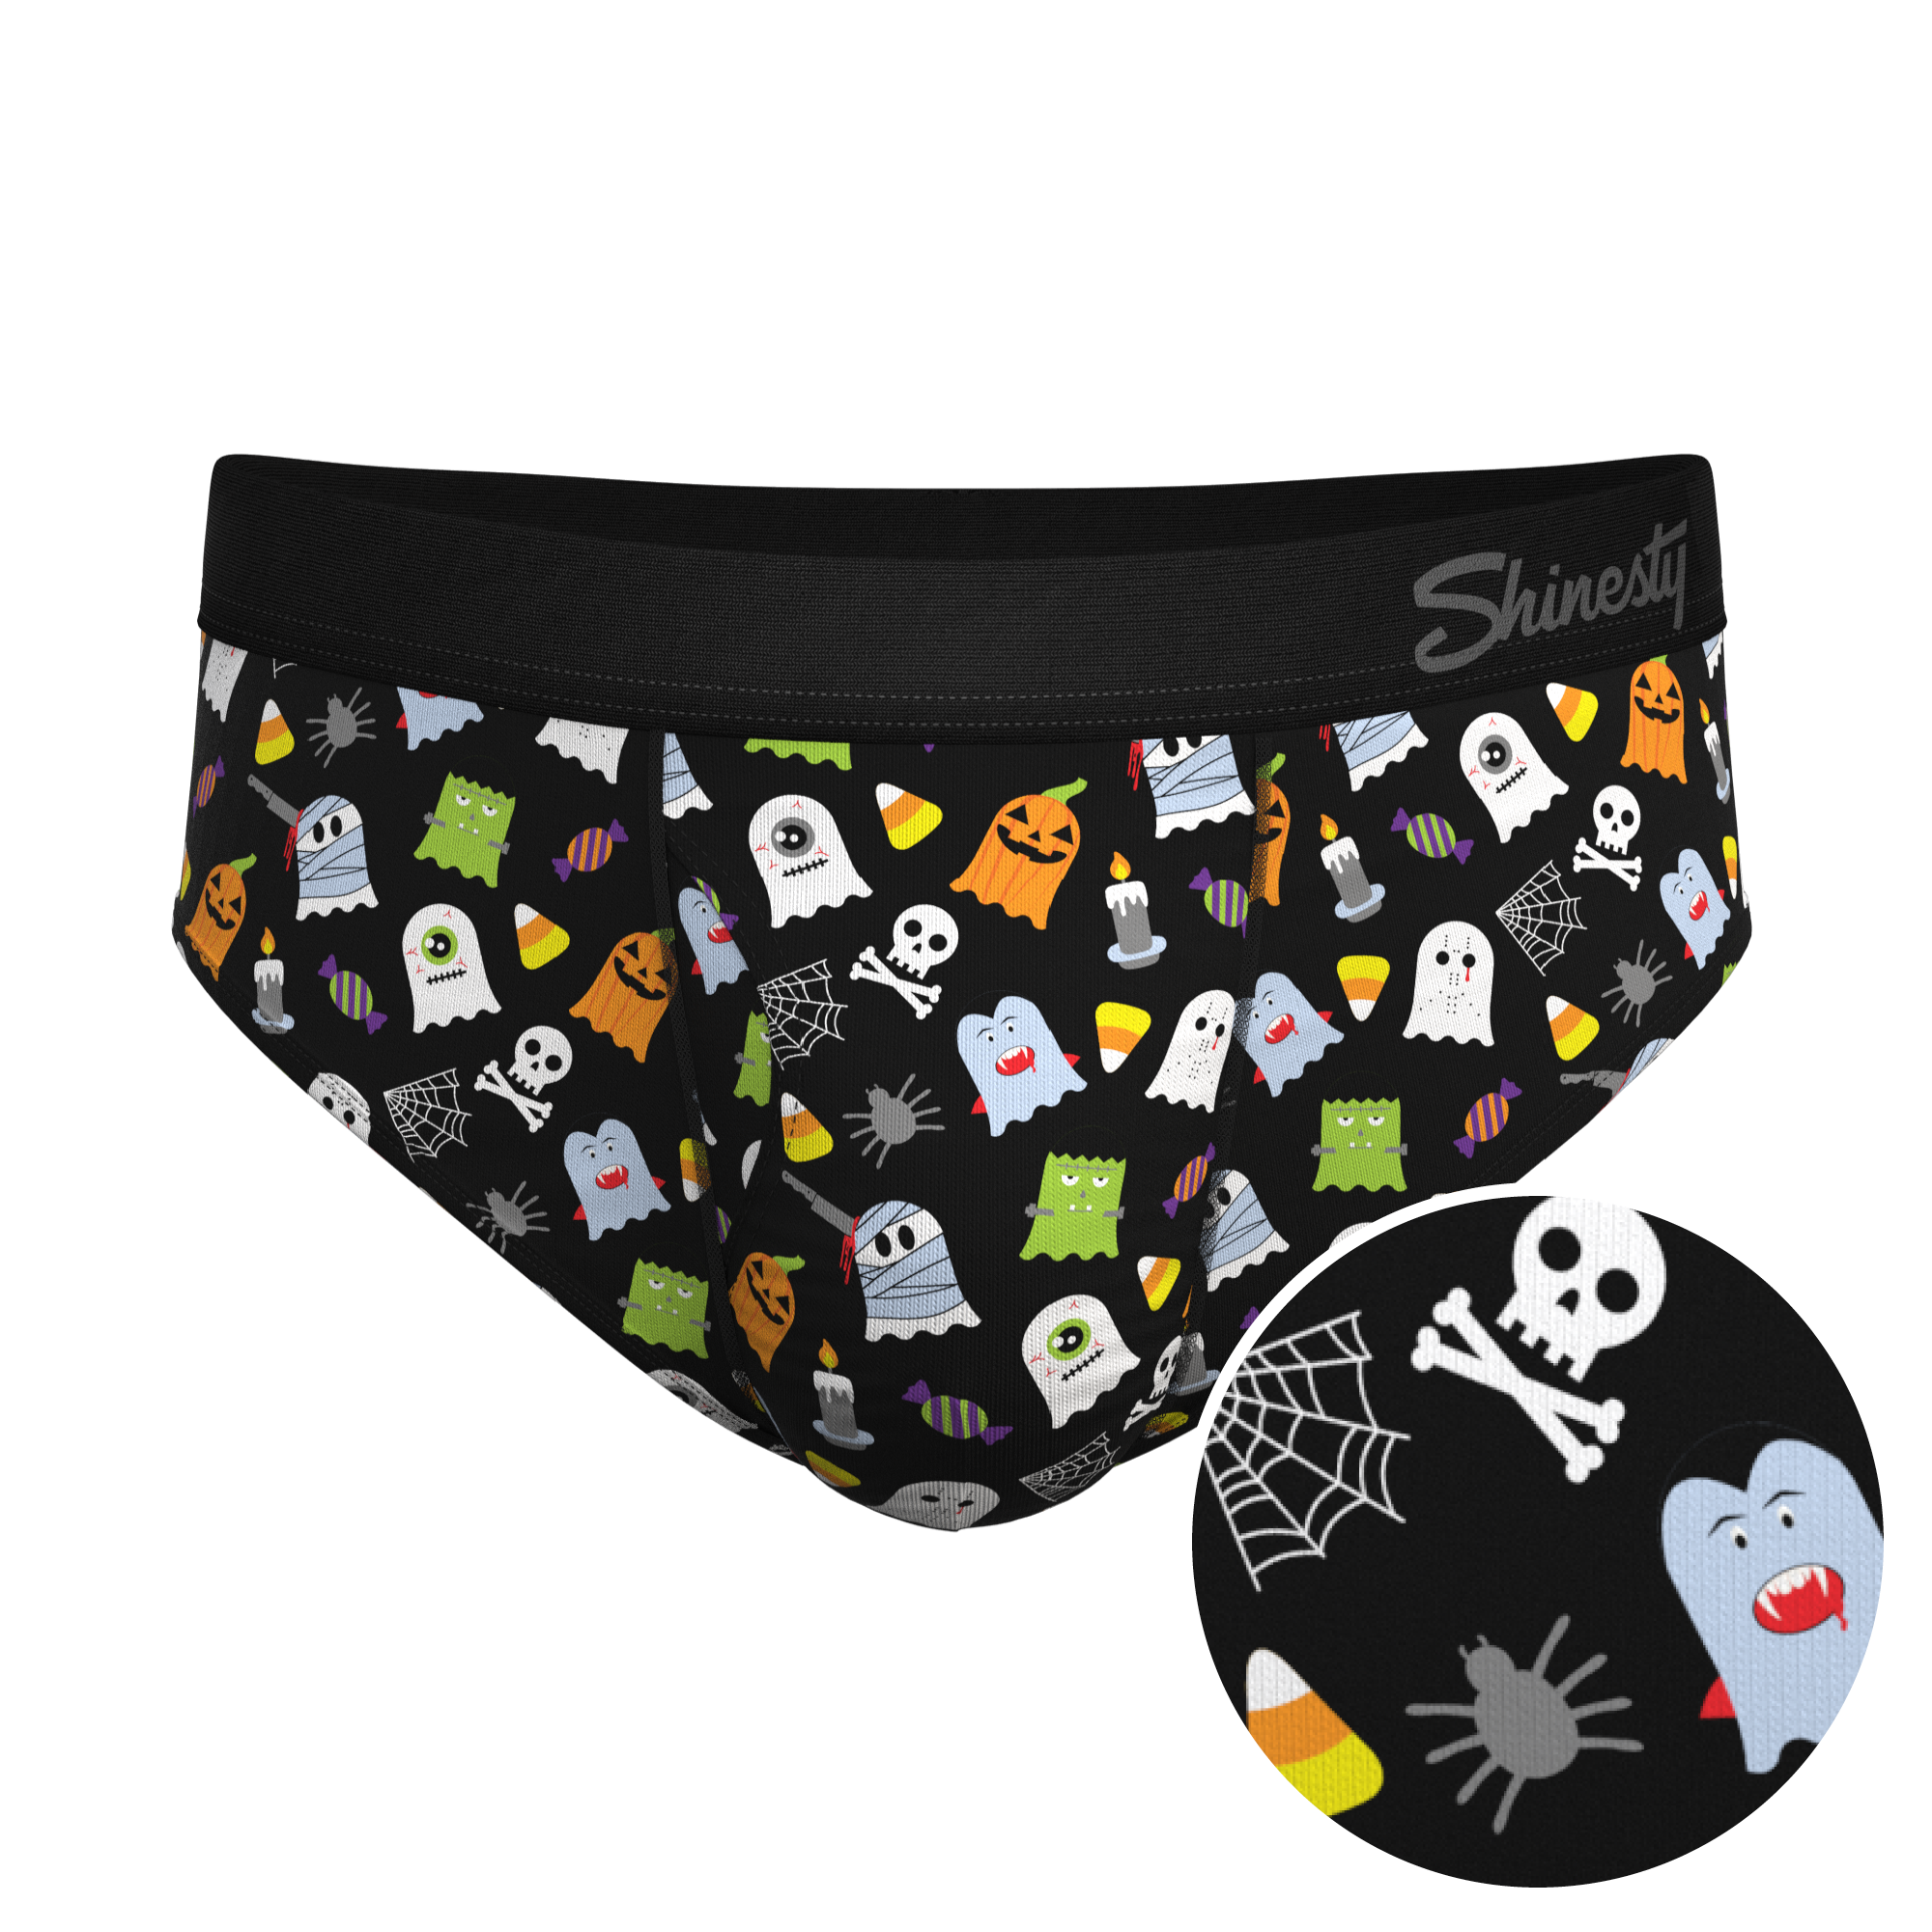 Men's Halloween Underwear by Shinesty